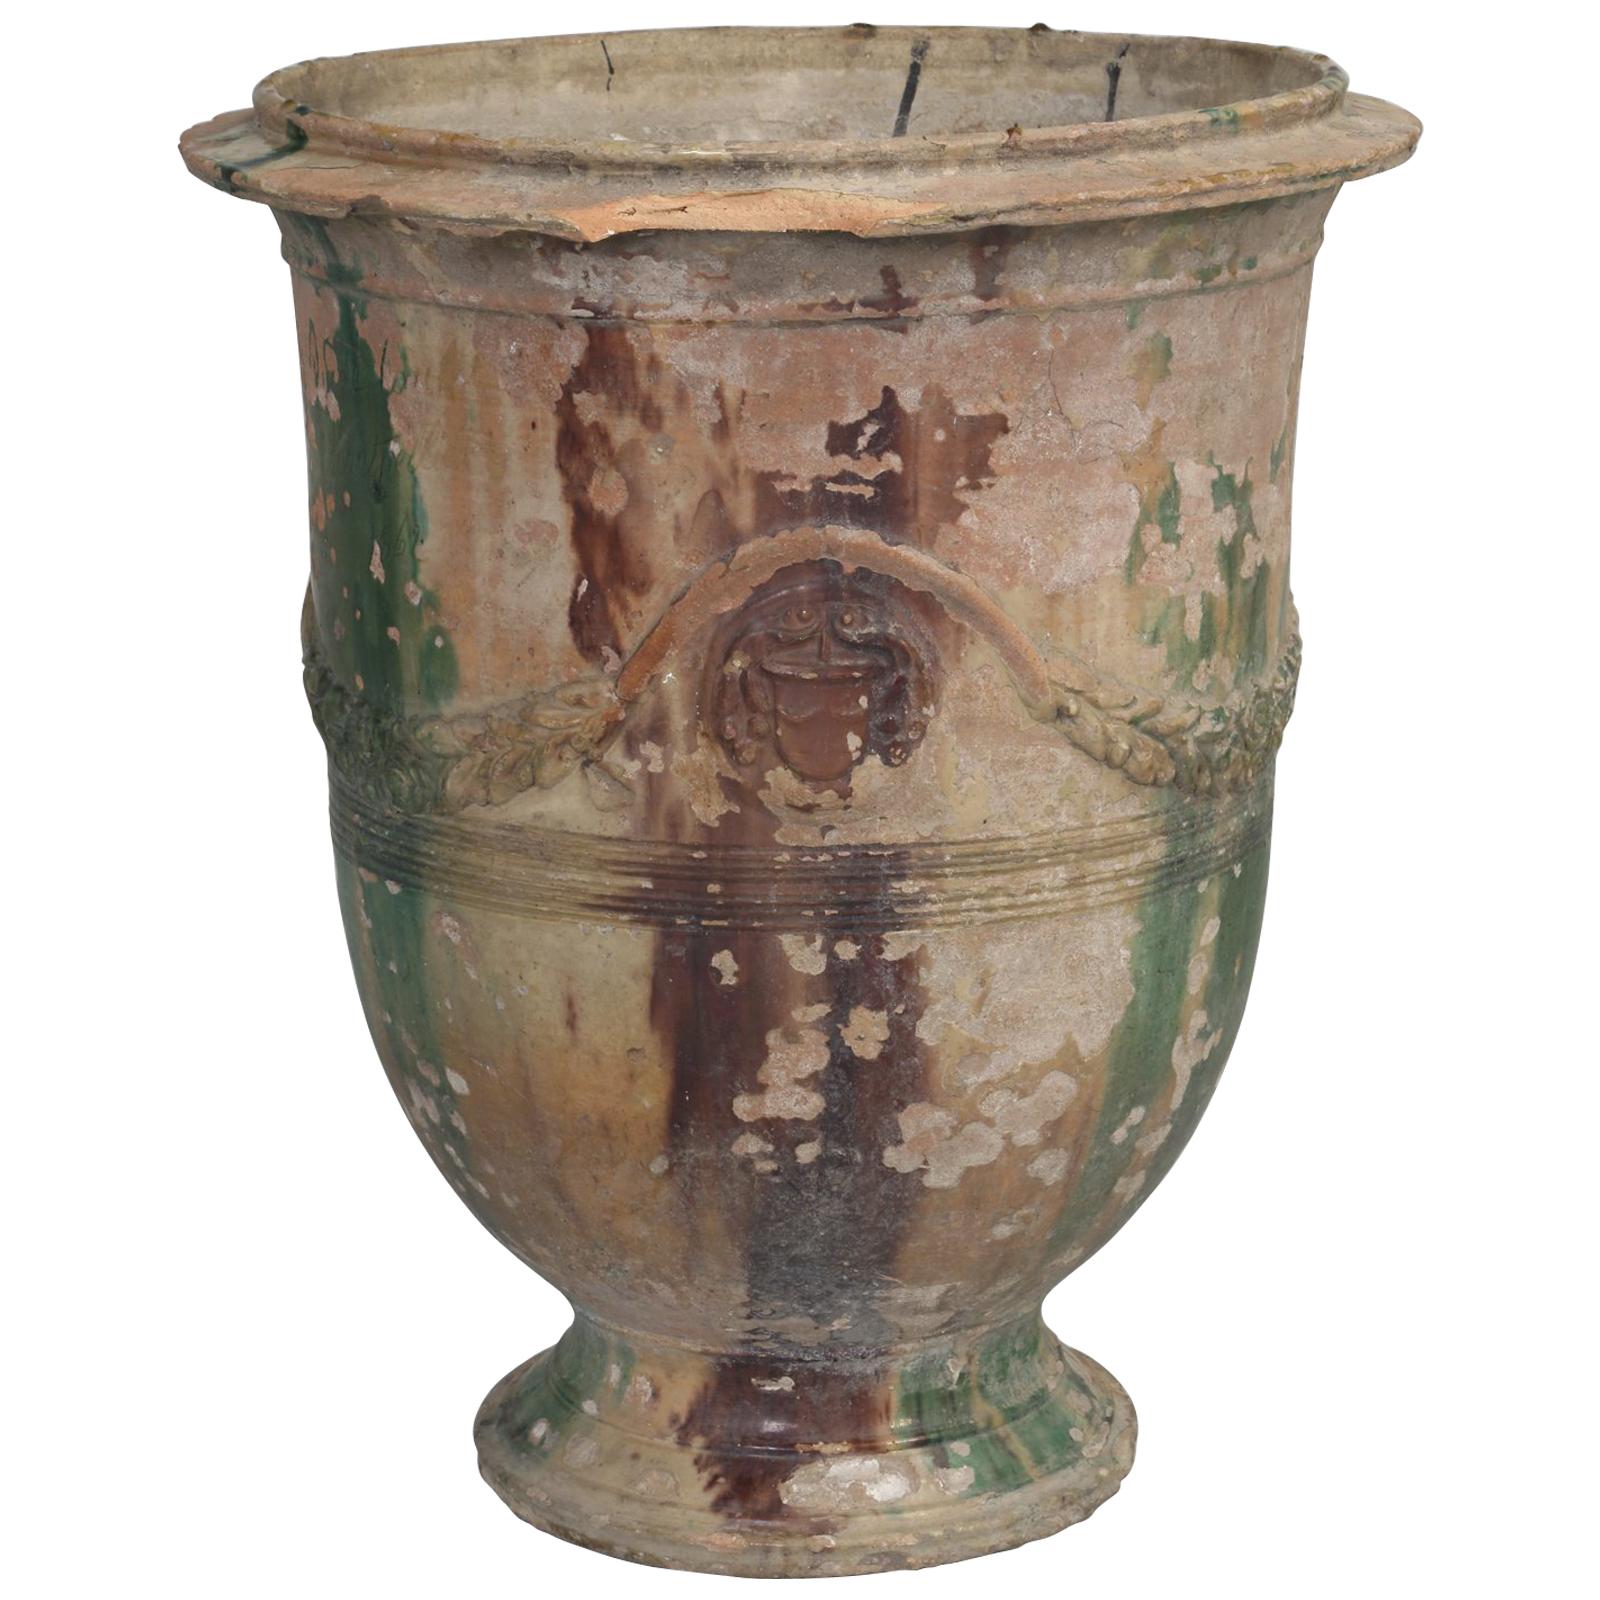 Antique French Anduze Style Garden Vase, Pot or Planter, circa 1862